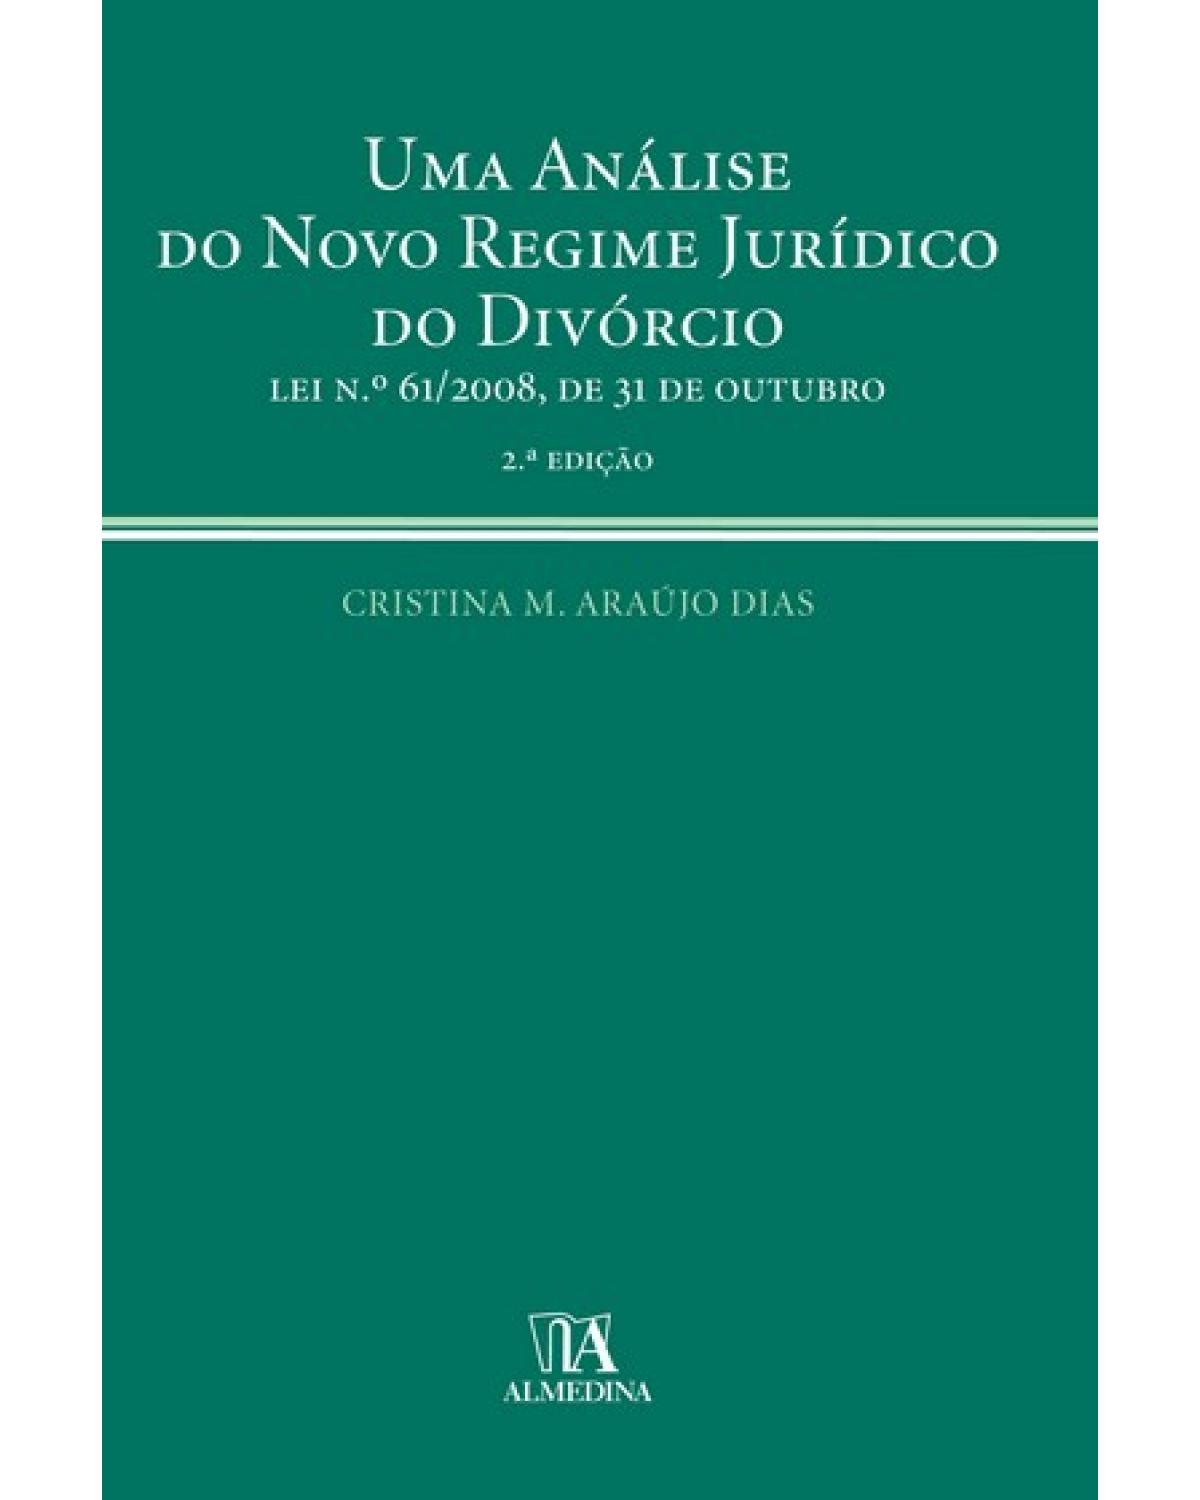 Uma análise do novo regime jurídico do divórcio: lei nº 61/2008, de 31 de outubro - 2ª Edição | 2009